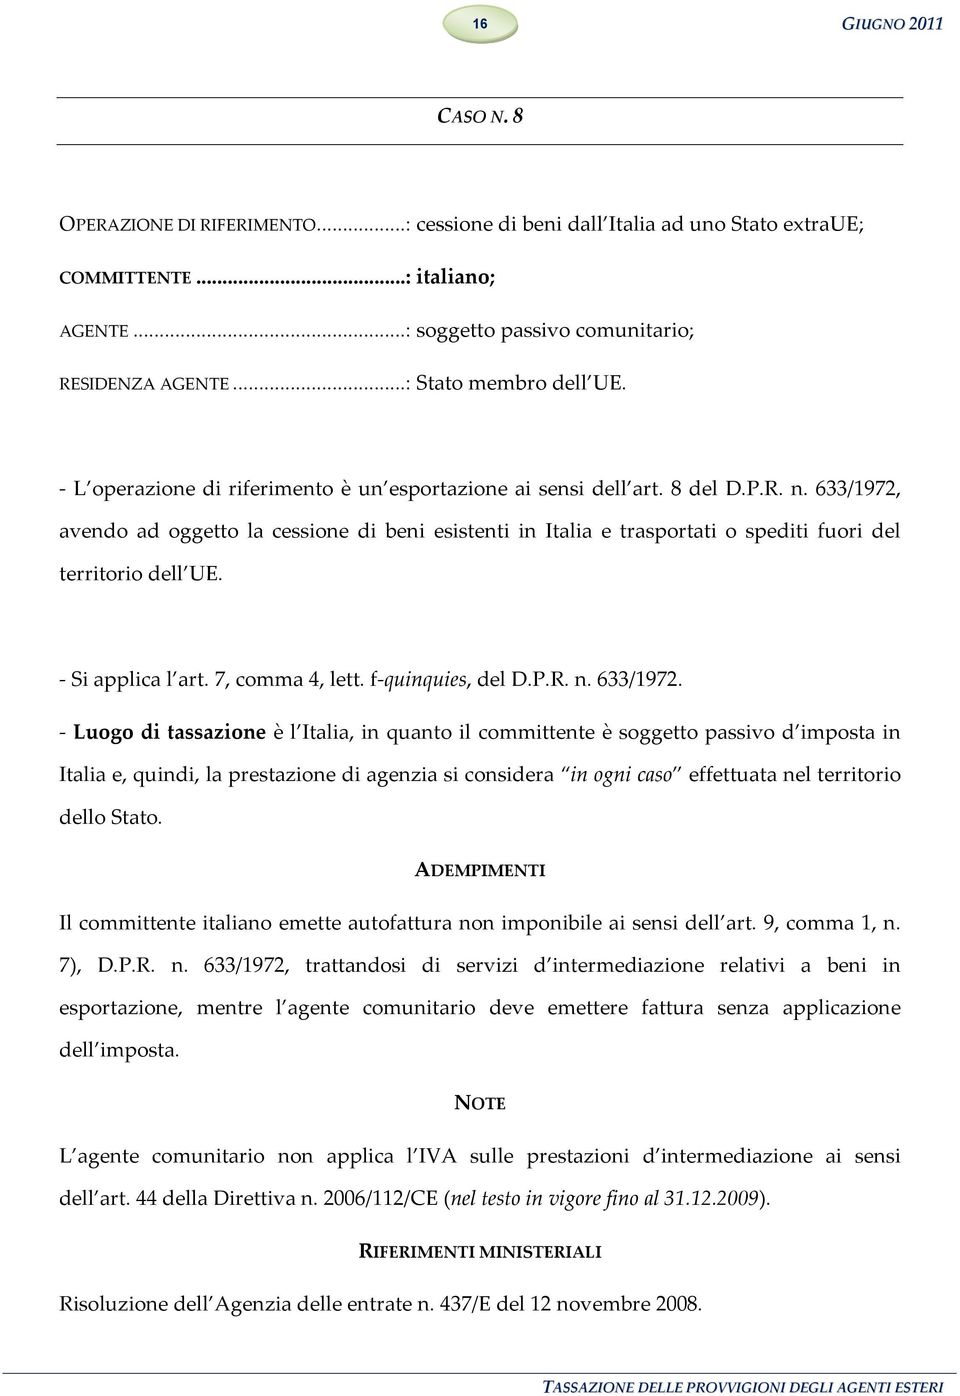 633/1972, avendo ad oggetto la cessione di beni esistenti in Italia e trasportati o spediti fuori del territorio dell UE. - Si applica l art. 7, comma 4, lett. f-quinquies, del D.P.R. n. 633/1972.